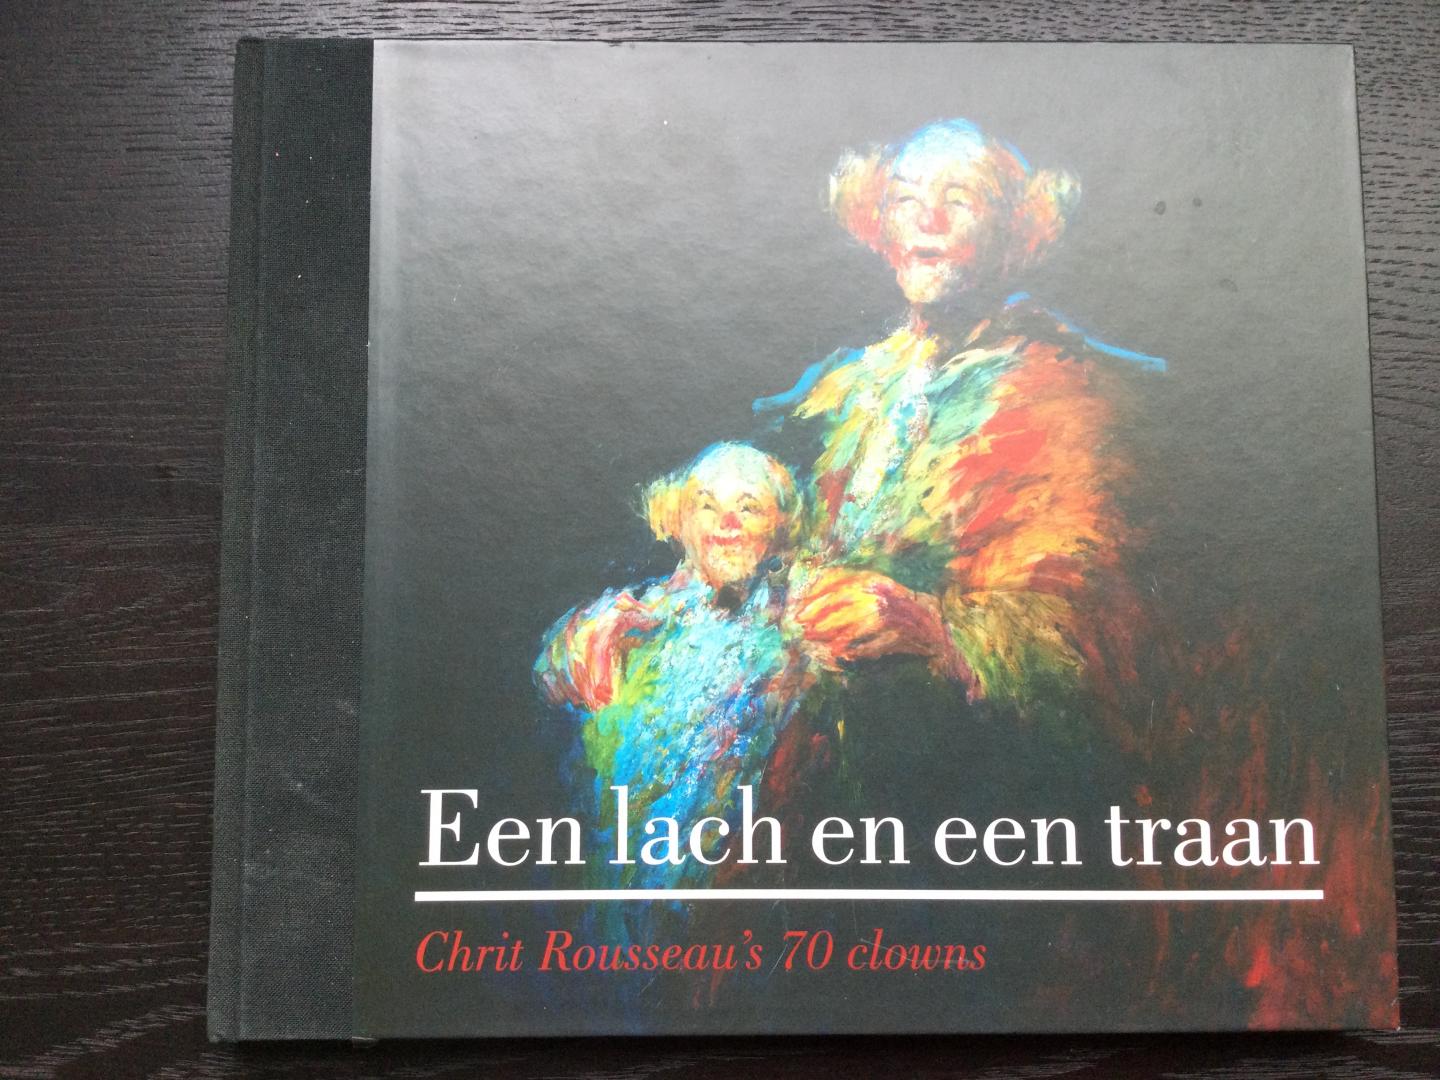 Van Lijf, Guillaume - Een lach en een traan / Chrit Rousseau's 70 clowns, Gesigneerd met tekening